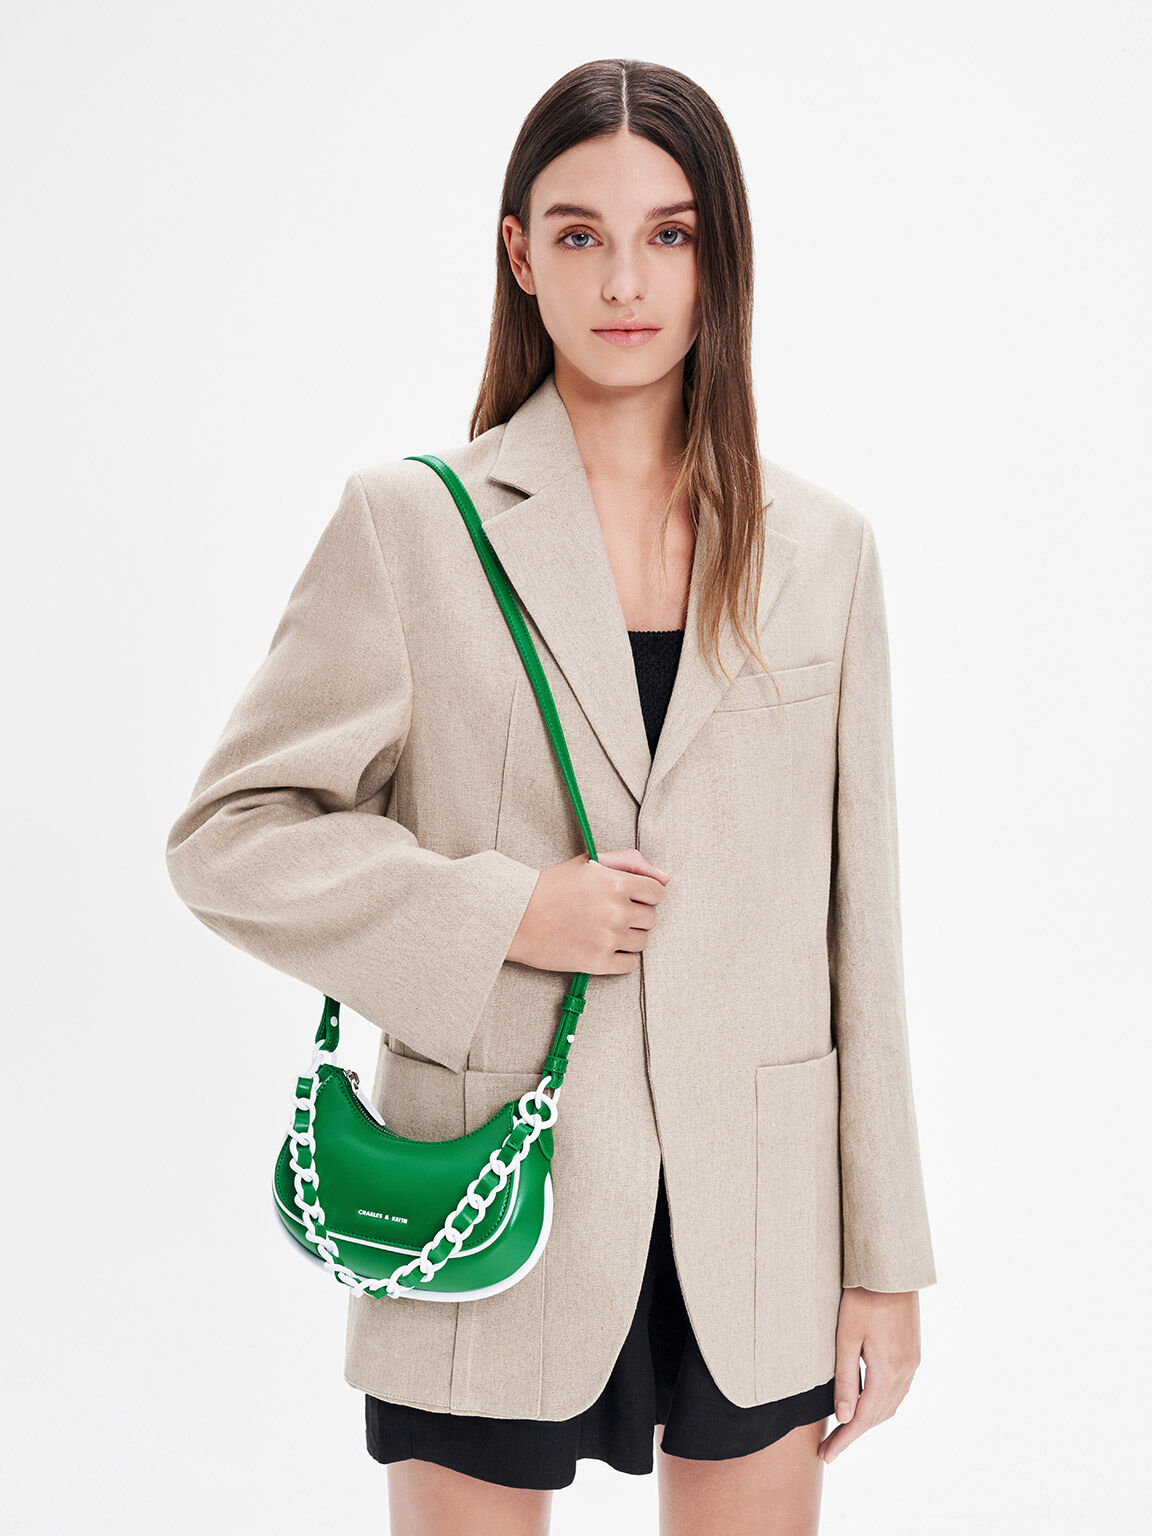 Alouette Curved Shoulder Bag, Green, hi-res